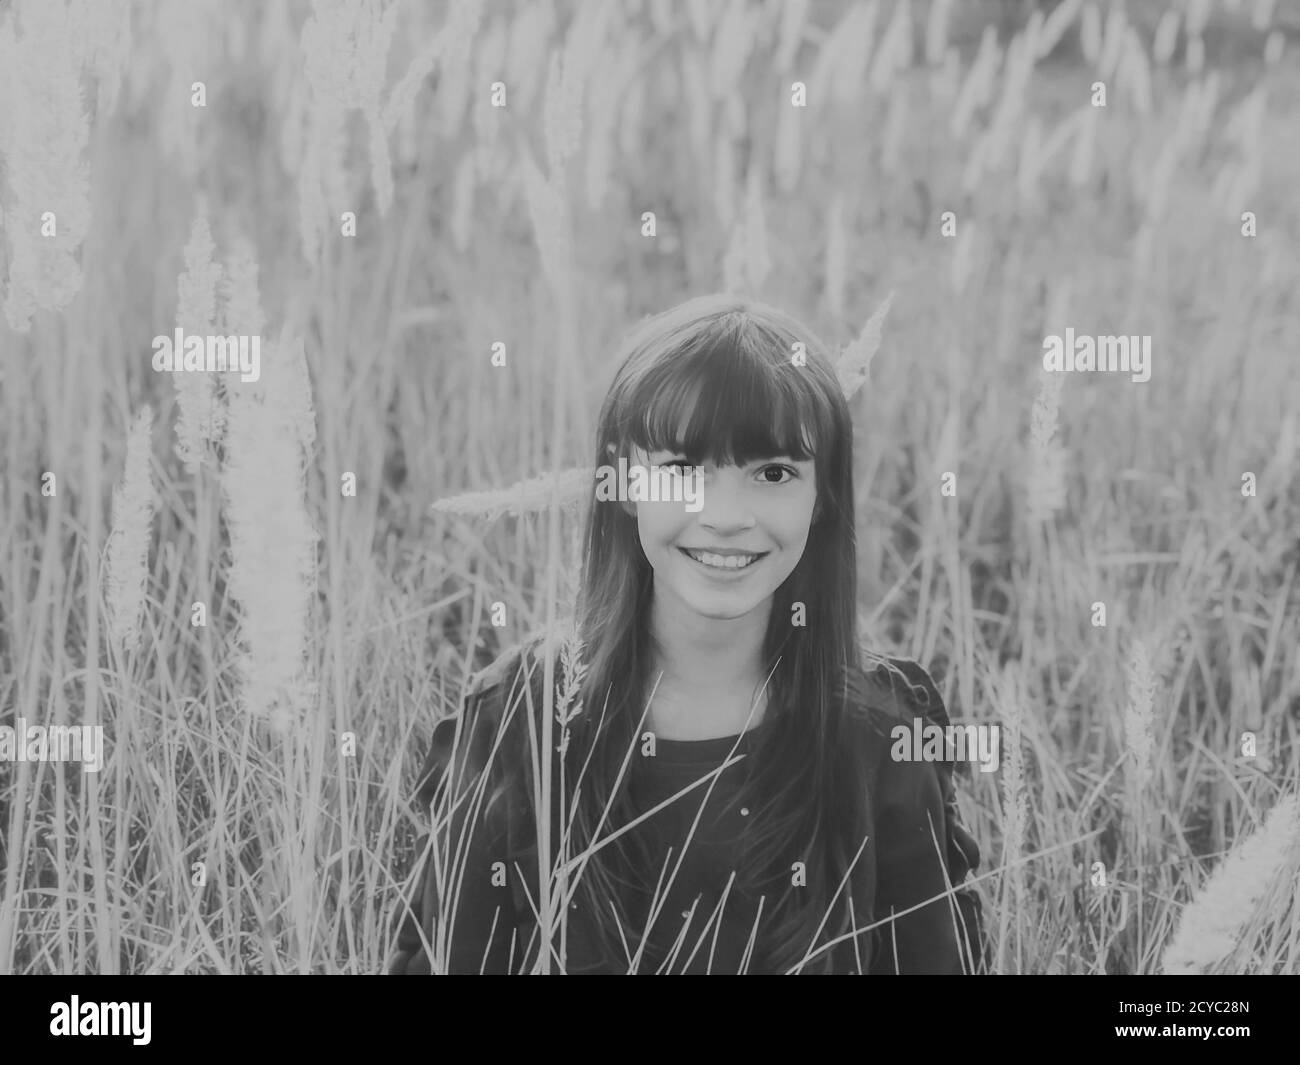 Spaß am Herbst. Herbst Saison Natur Grautöne Foto von einem niedlichen lächelnden Teenager-Mädchen bei wilden flauschigen Spikes Feld Stockfoto